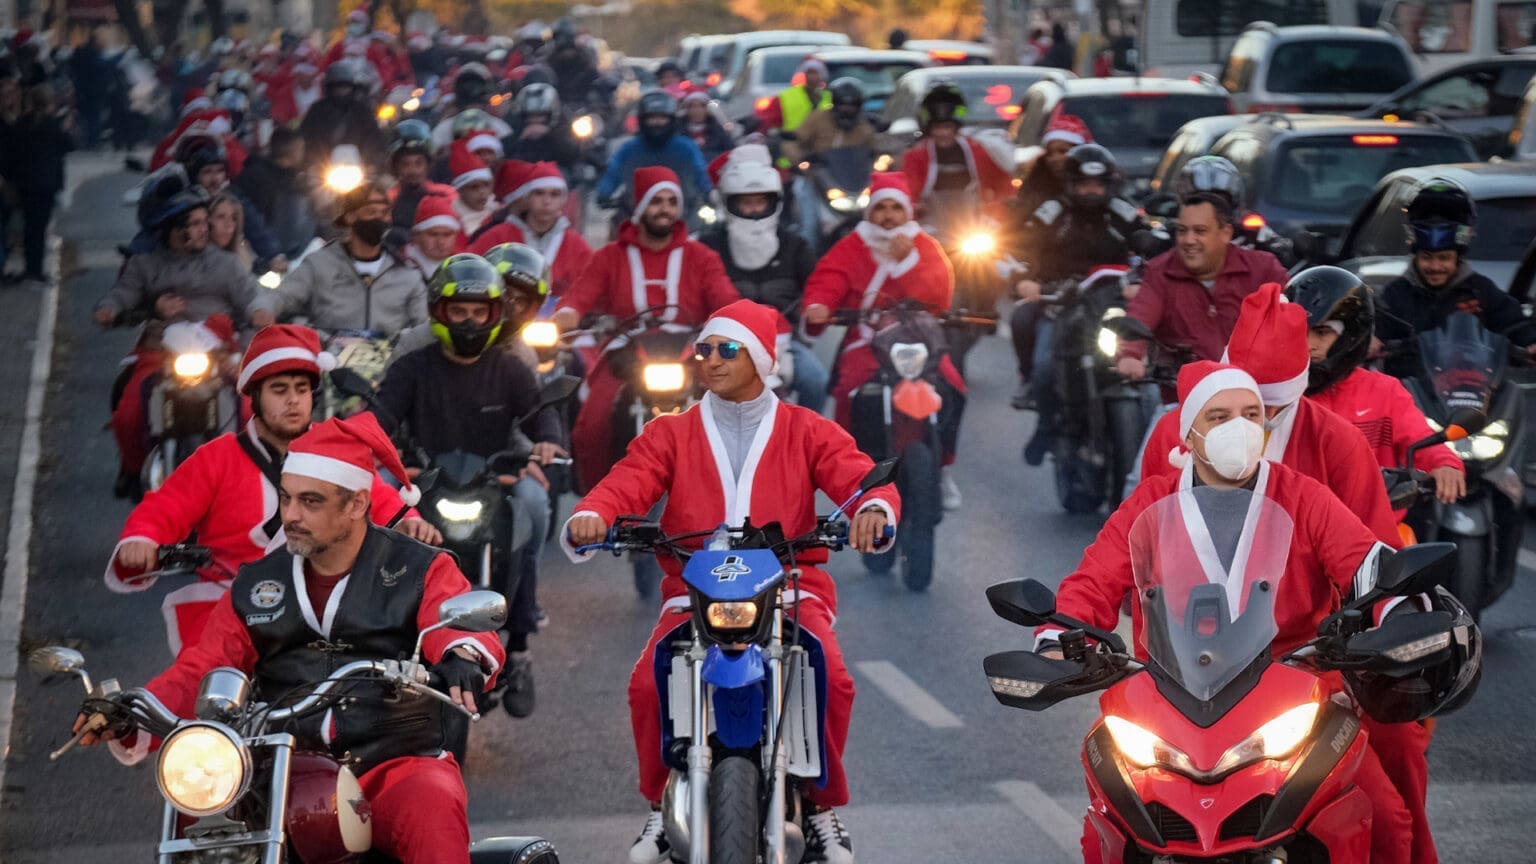 O Desfile de Moto Pai Natal em Corroios: Espalhando Alegria no Natal